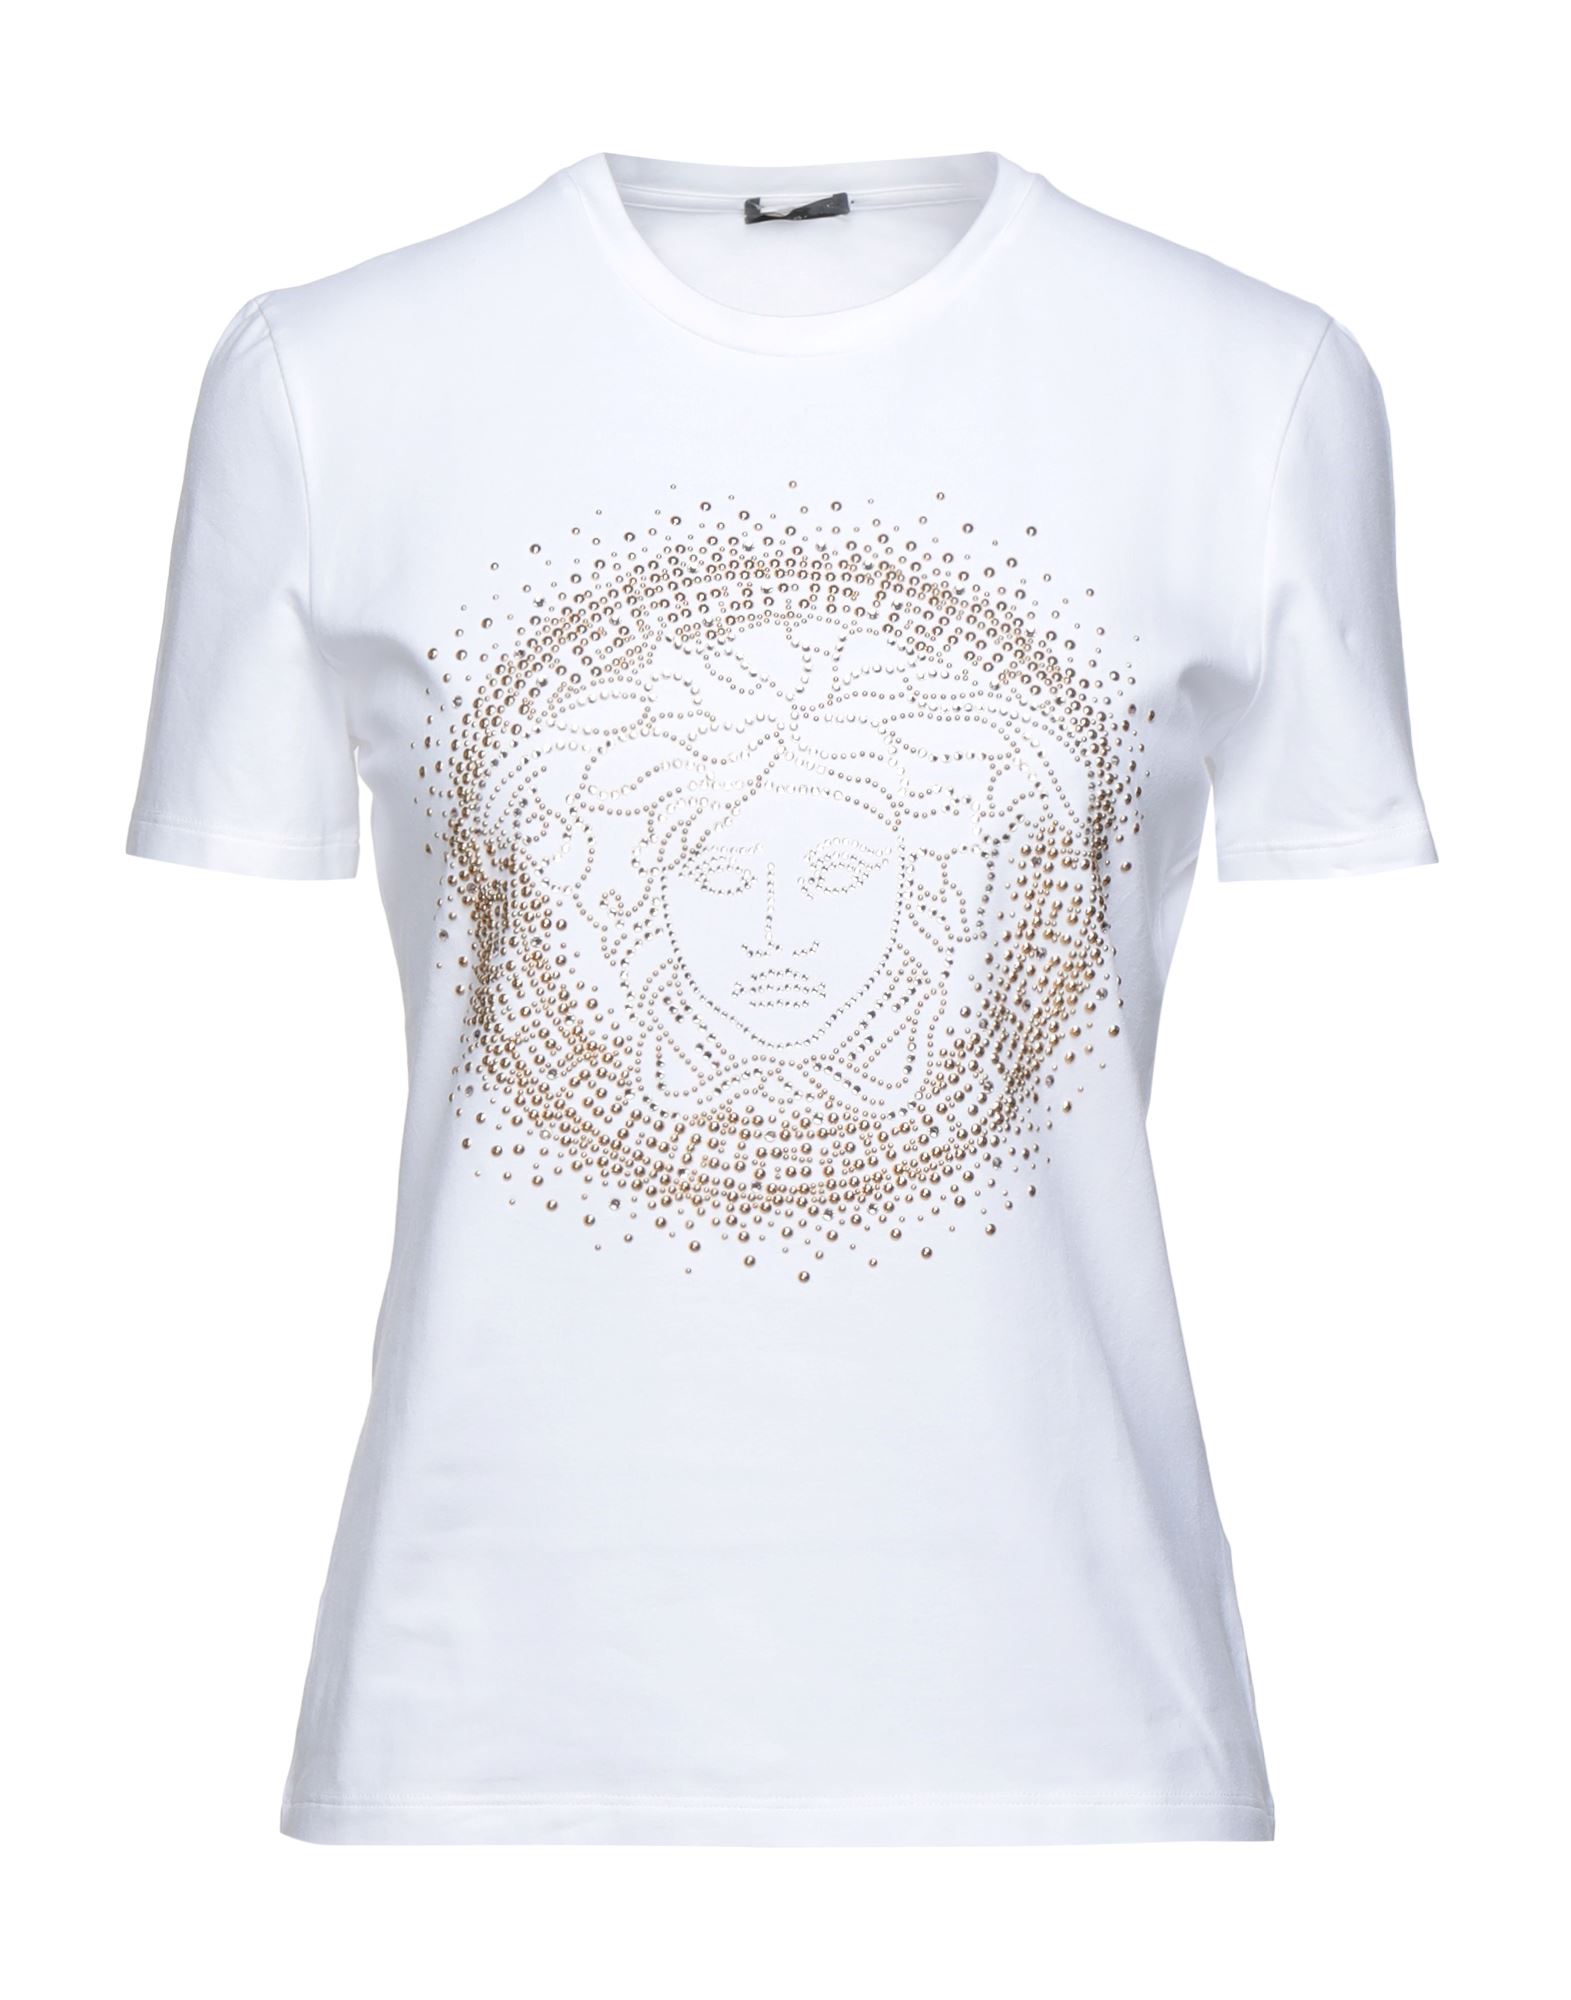 VERSACE T-shirts Damen Weiß von VERSACE